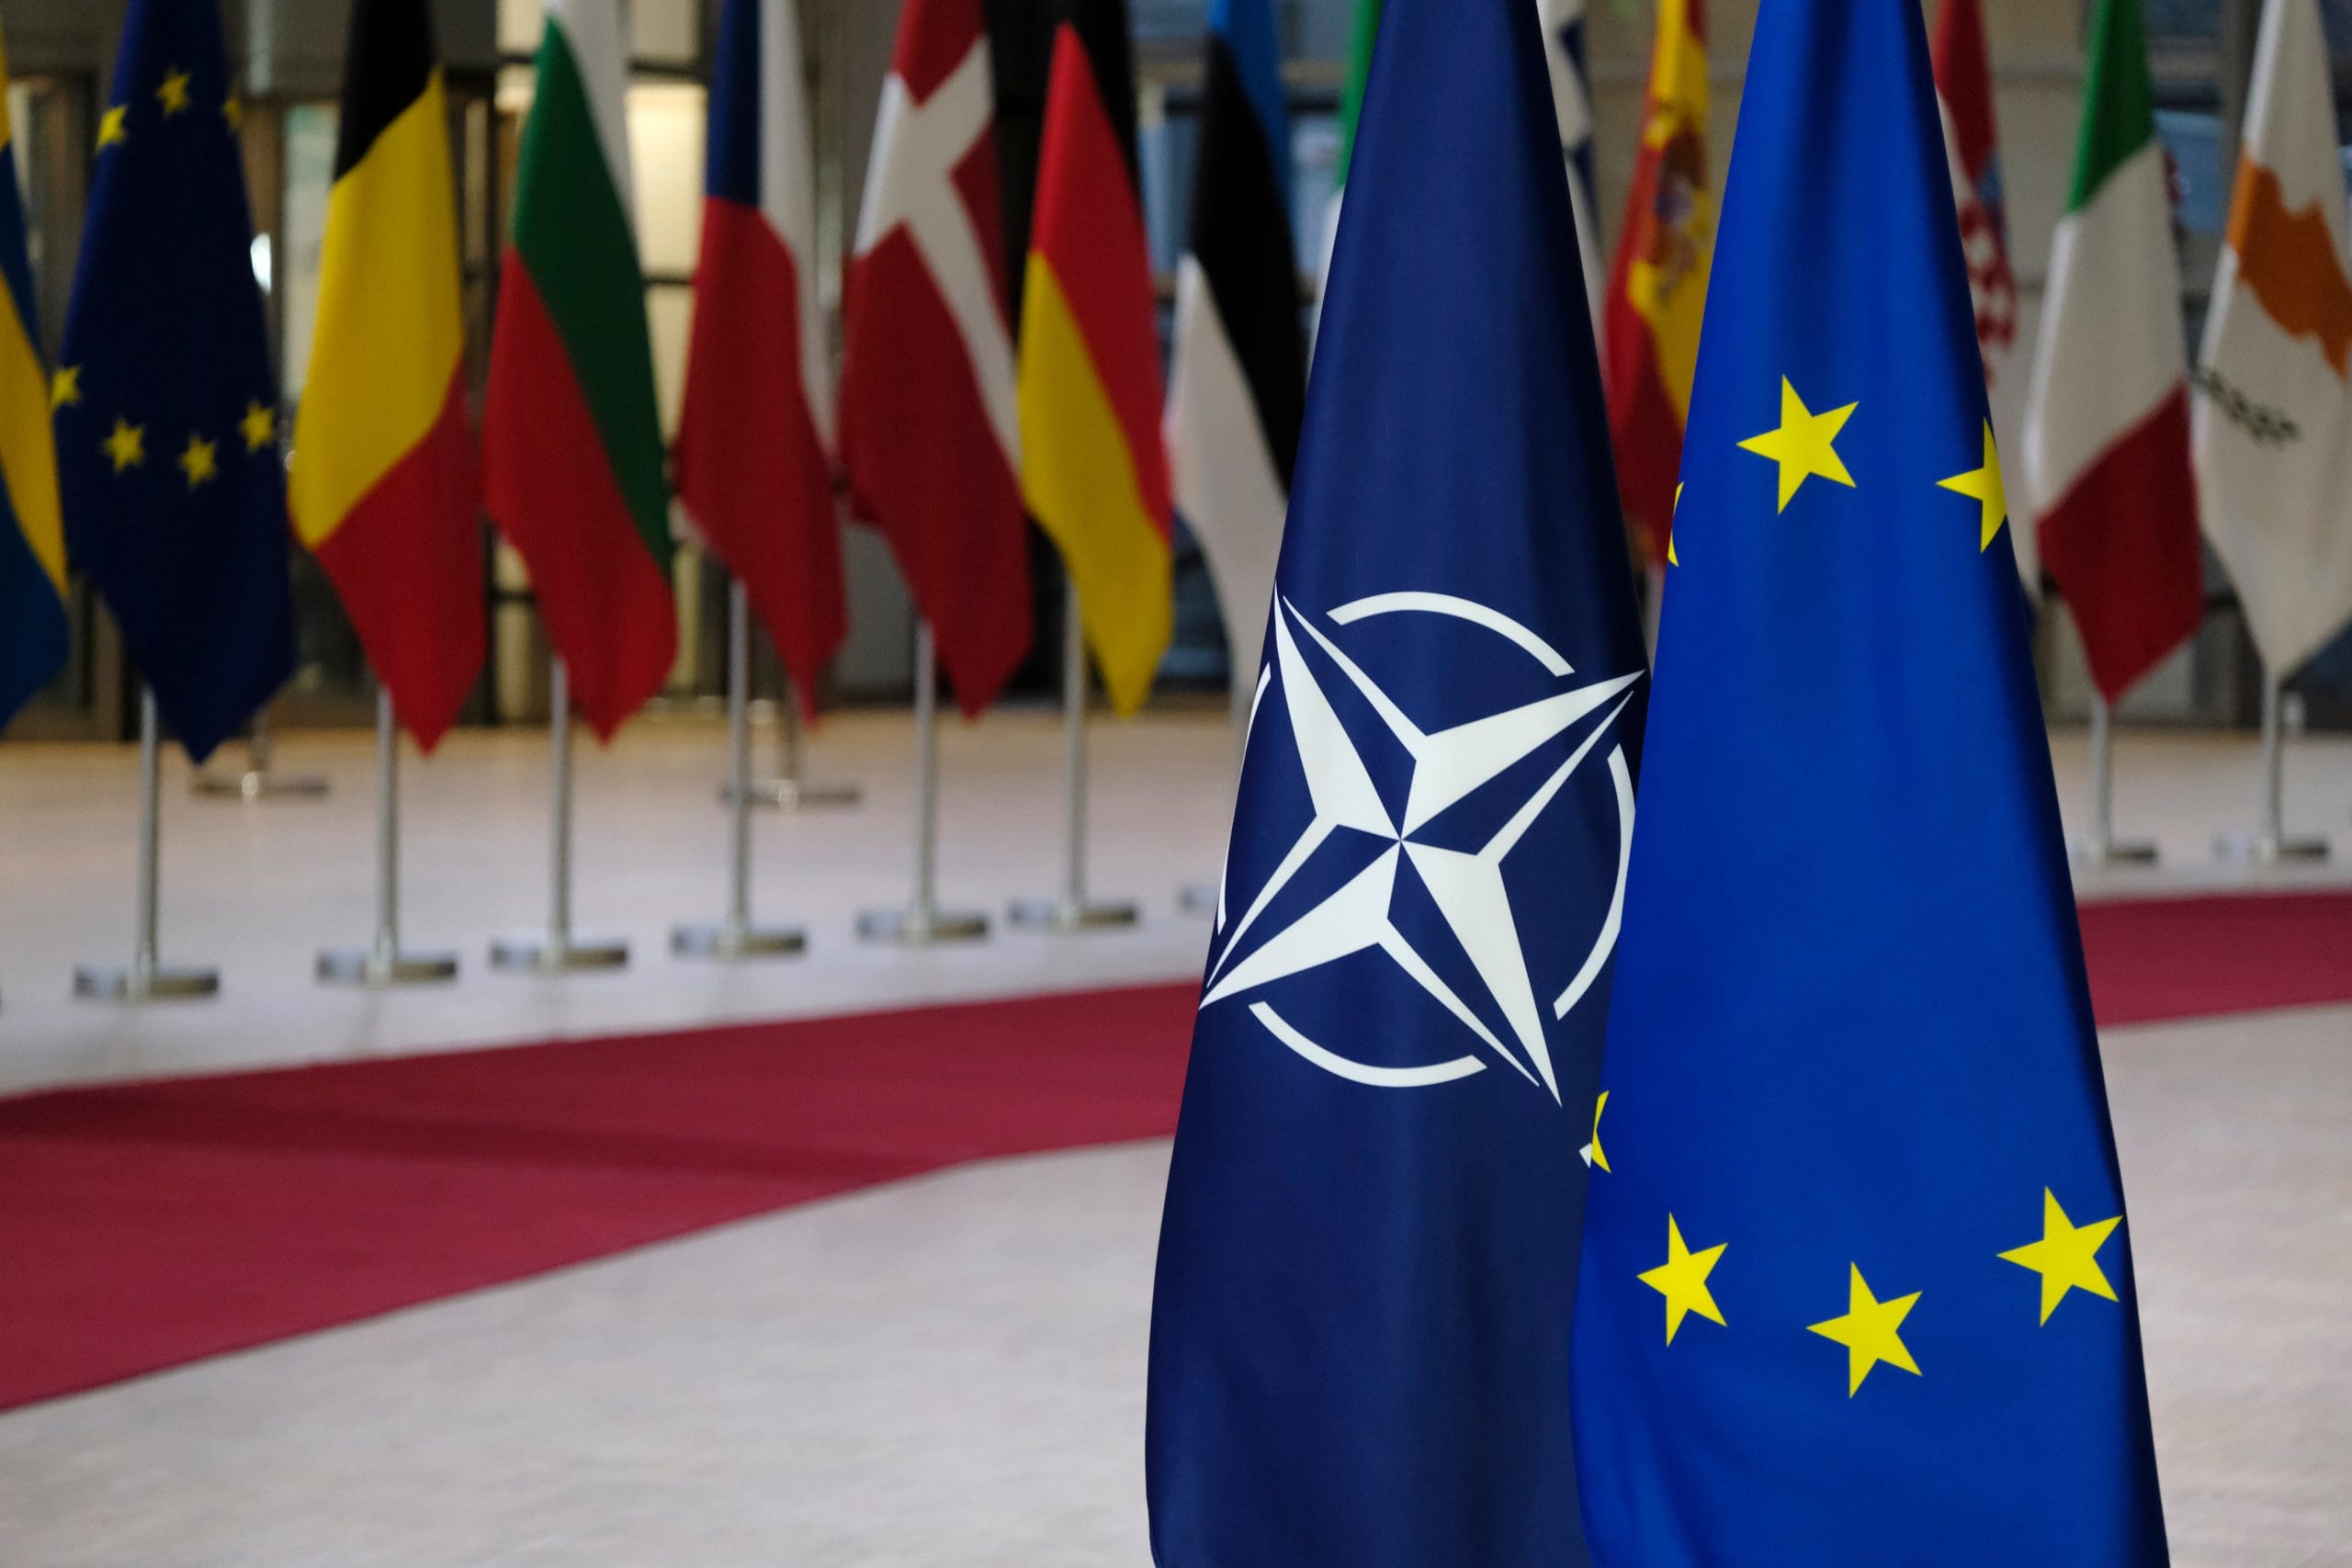 Le project de défense européenne dont on parle au Conseil européen est mort-né